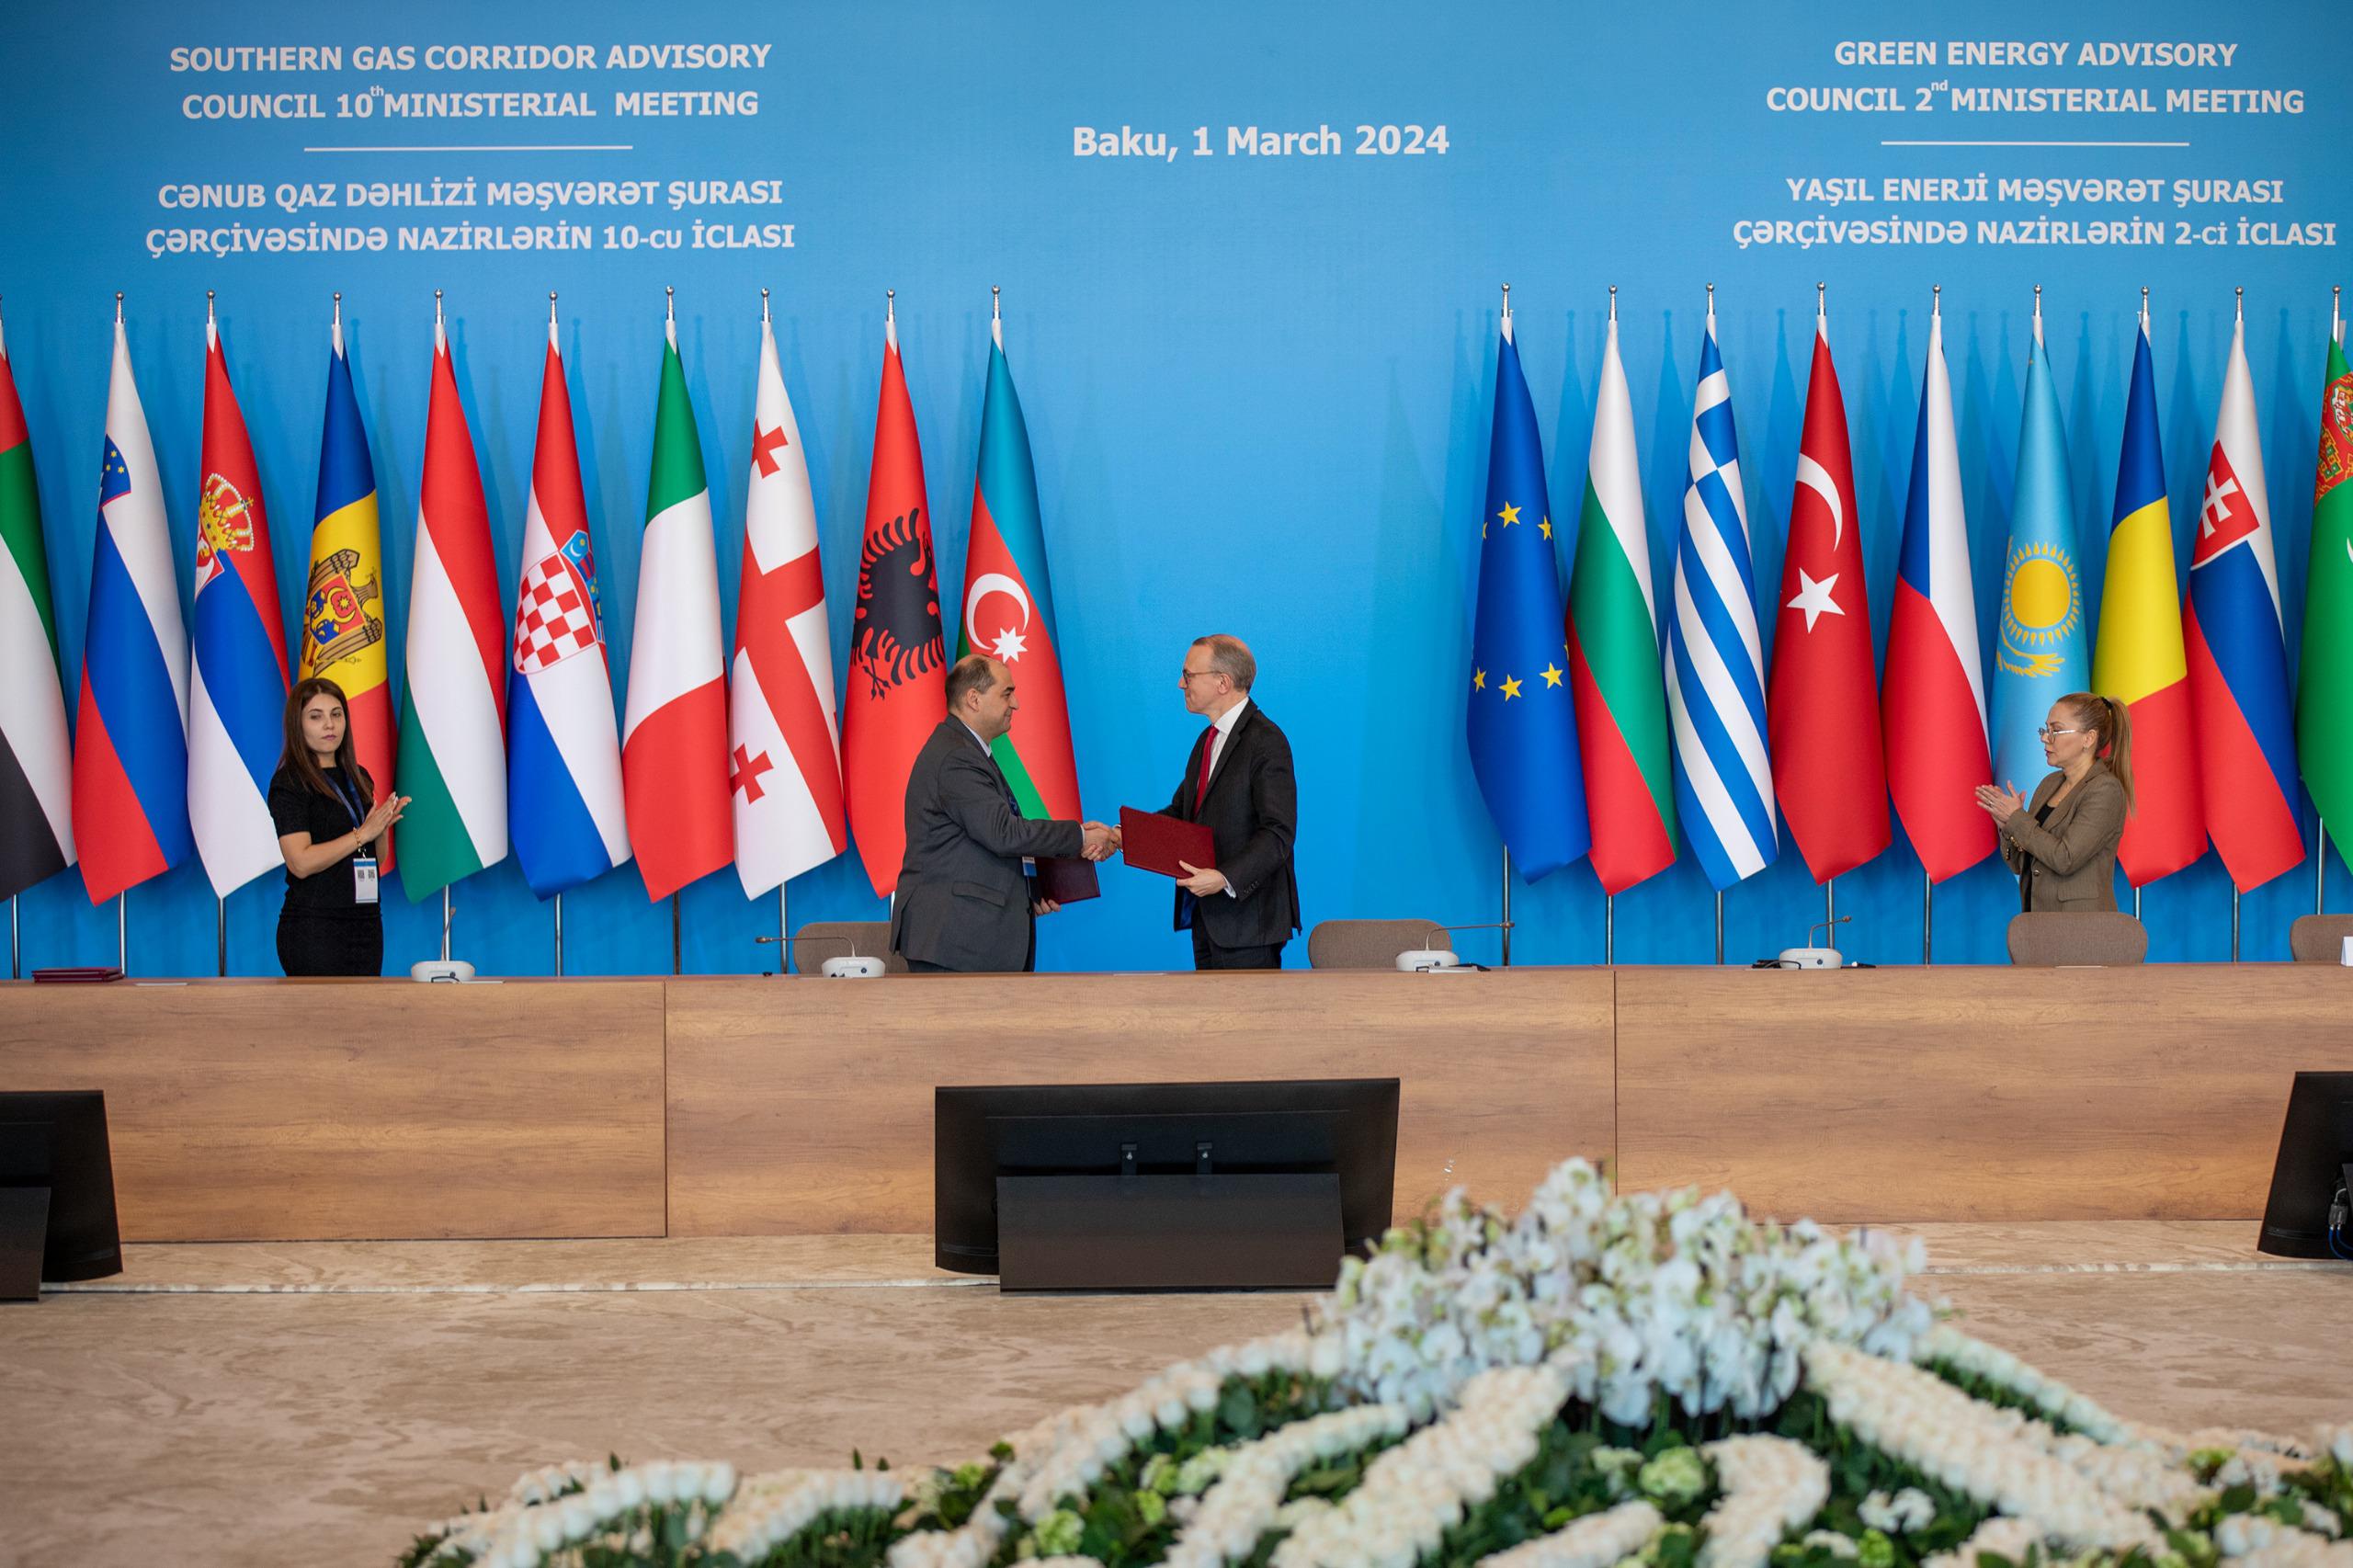 Memorandum of Understanding has been signed between Azerbaijan and WindEurope on wind e...